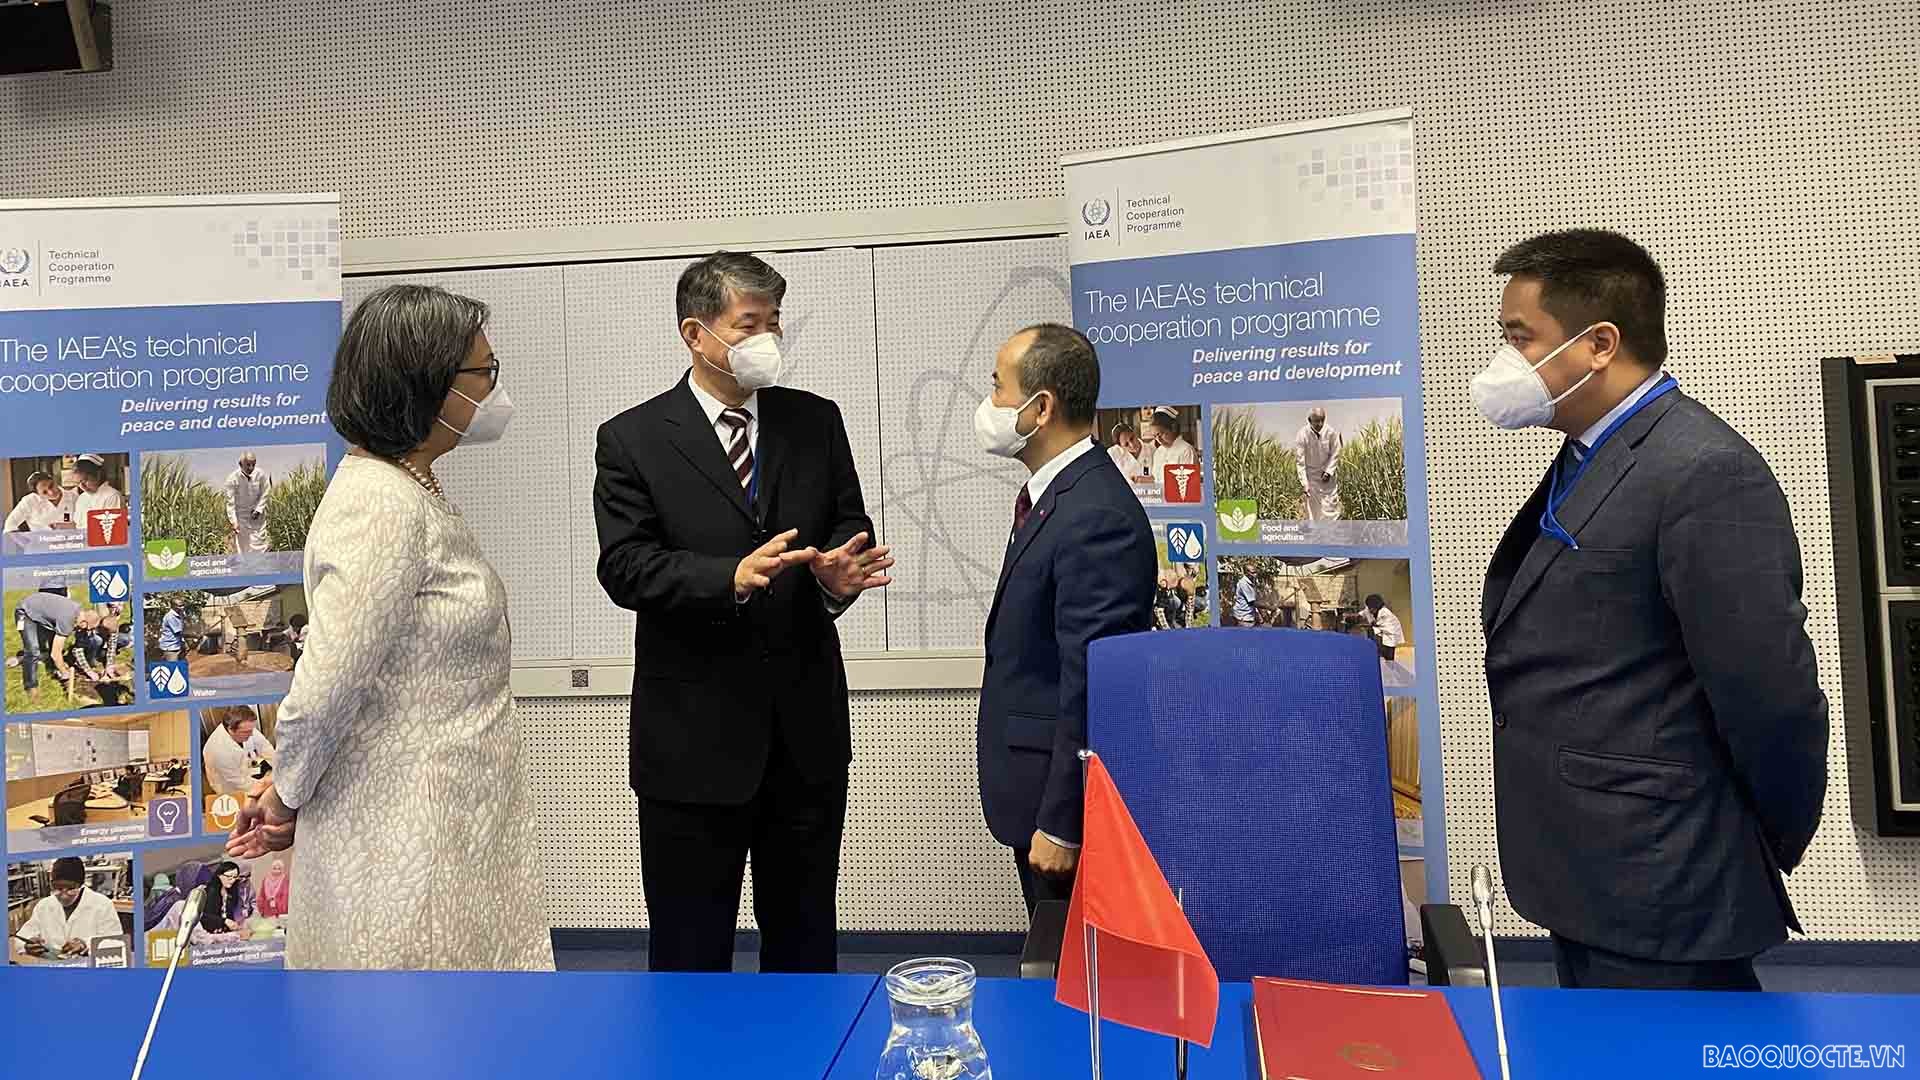 Đại sứ Nguyễn Trung Kiên trao đổi với Tiến sĩ Hua LIU, Phó Tổng giám đốc phụ trách hợp tác về công nghệ, kỹ thuật của IAEA.